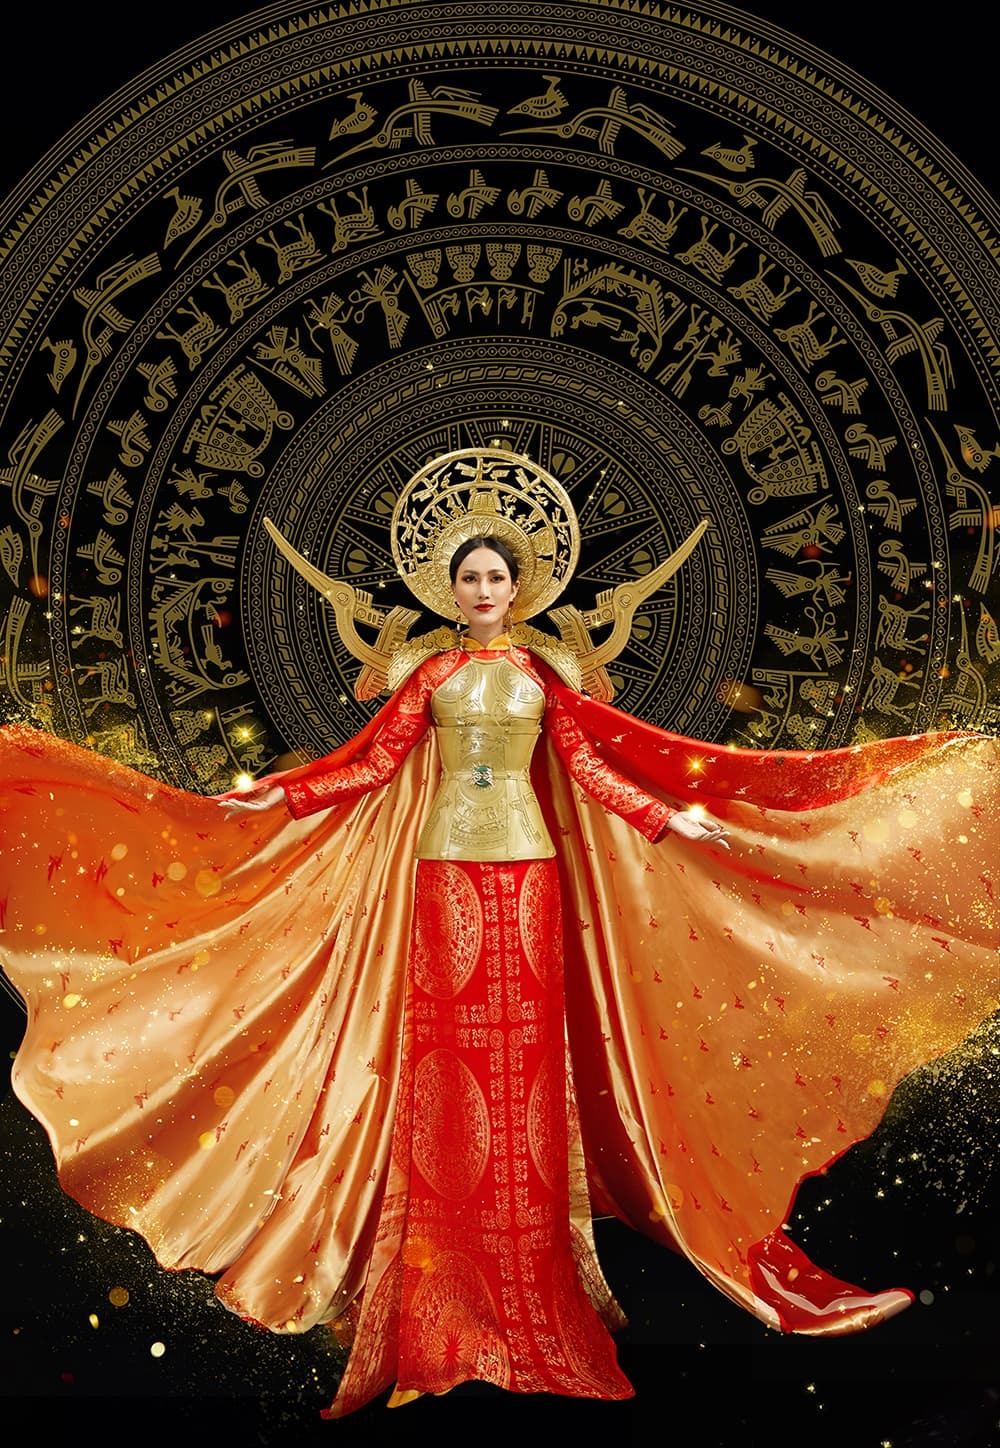  
Đây sẽ là trang phục dân tộc của Hoài Sa ở cuộc thi Hoa hậu Chuyển giới Quốc tế 2020 - Tin sao Viet - Tin tuc sao Viet - Scandal sao Viet - Tin tuc cua Sao - Tin cua Sao